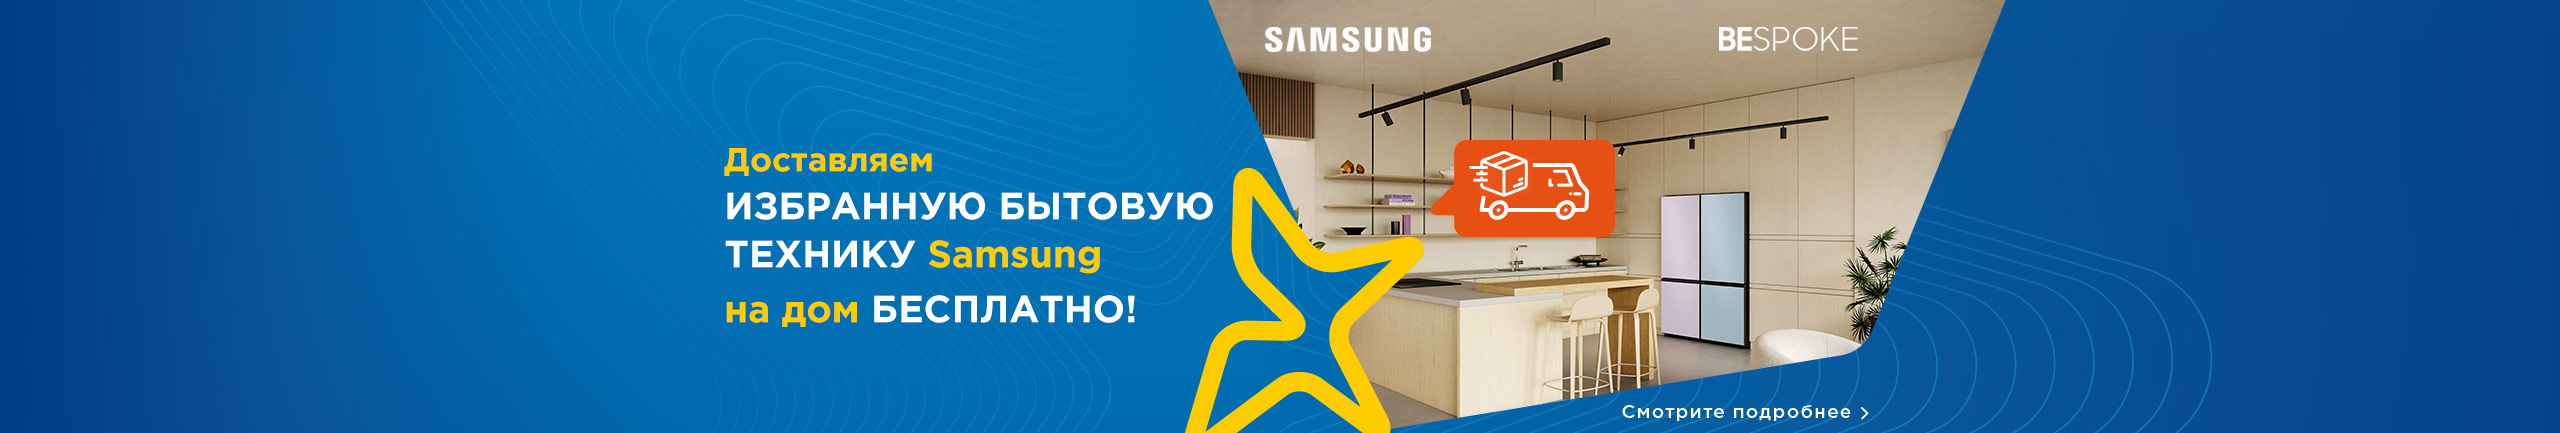 Доставляем избранную бытовую технику Samsung на дом бесплатно!